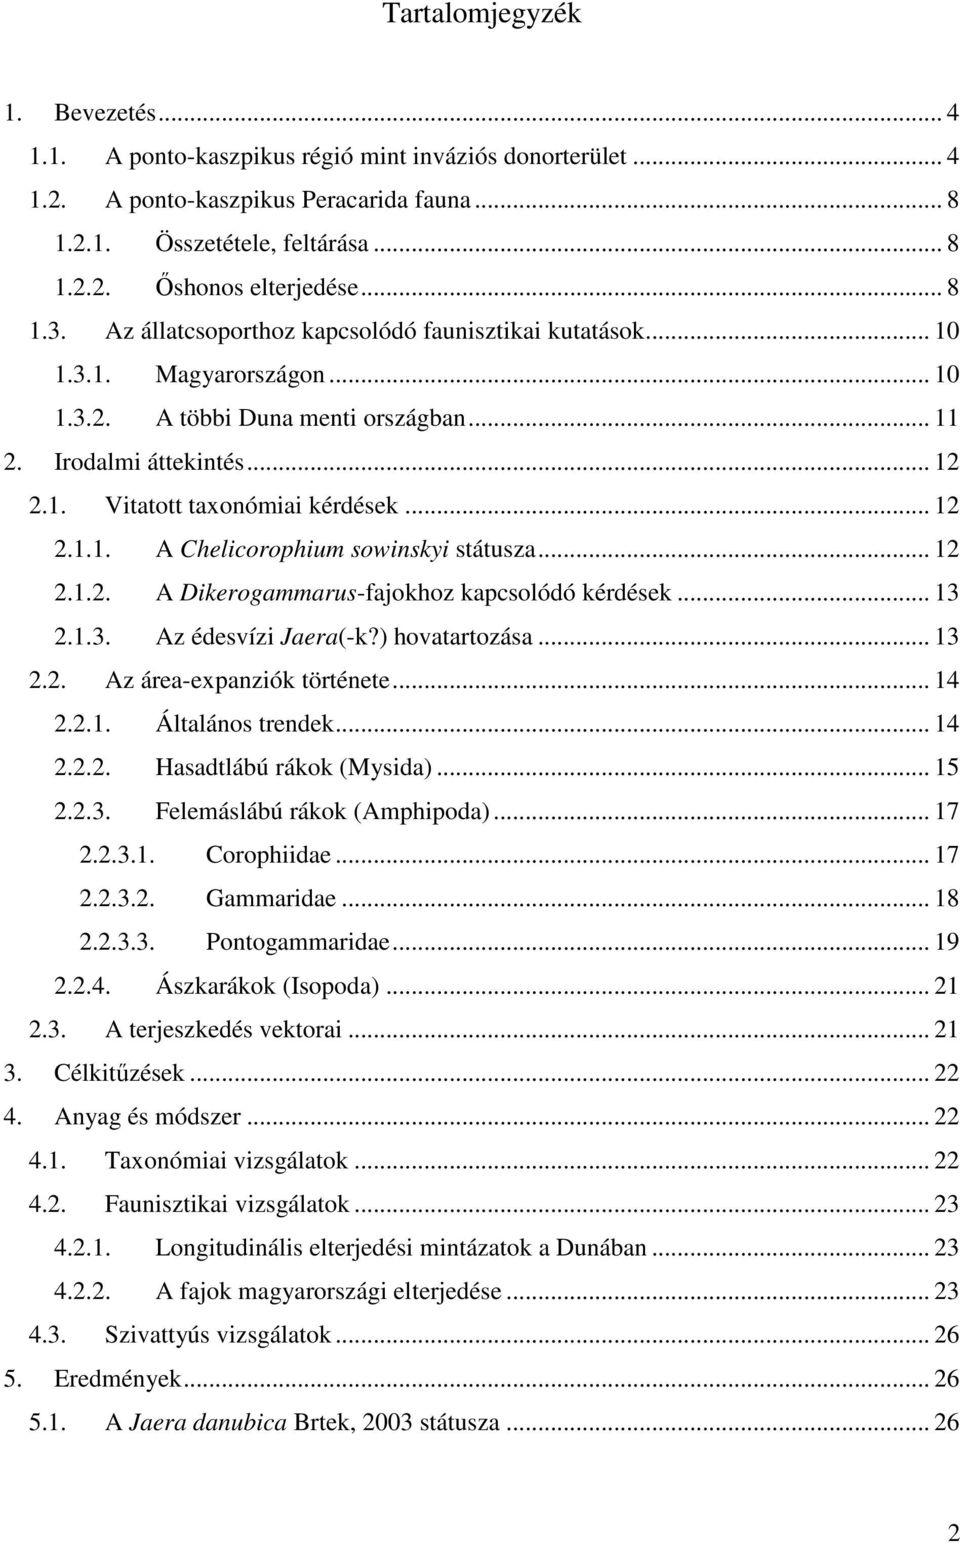 .. 12 2.1.1. A Chelicorophium sowinskyi státusza... 12 2.1.2. A Dikerogammarus-fajokhoz kapcsolódó kérdések... 13 2.1.3. Az édesvízi Jaera(-k?) hovatartozása... 13 2.2. Az área-expanziók története.